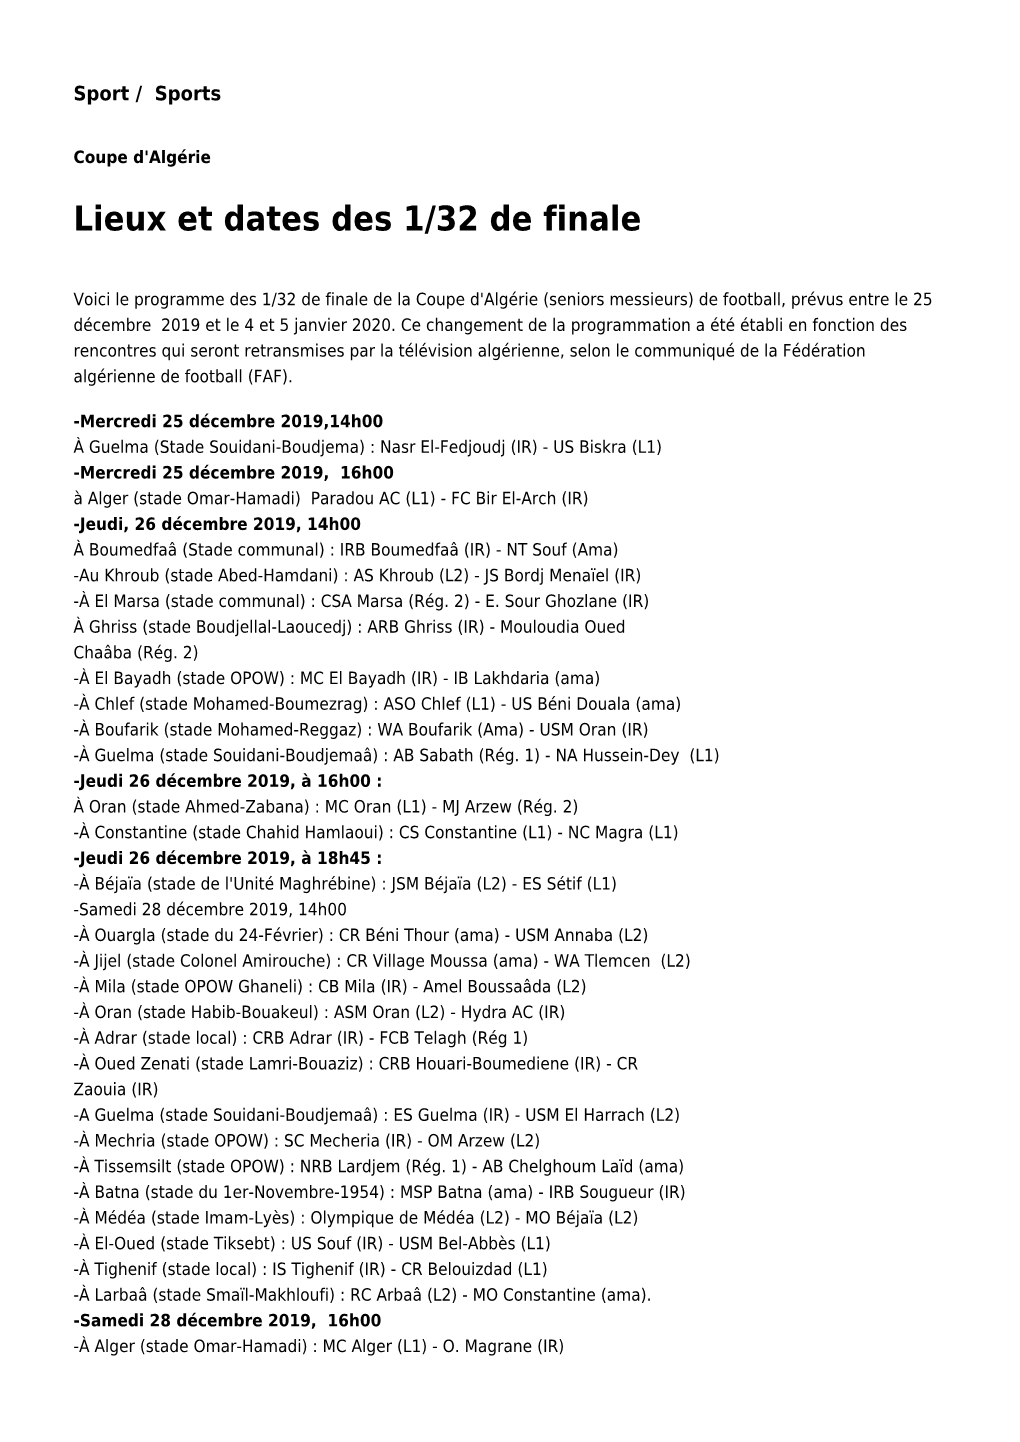 Lieux Et Dates Des 1/32 De Finale